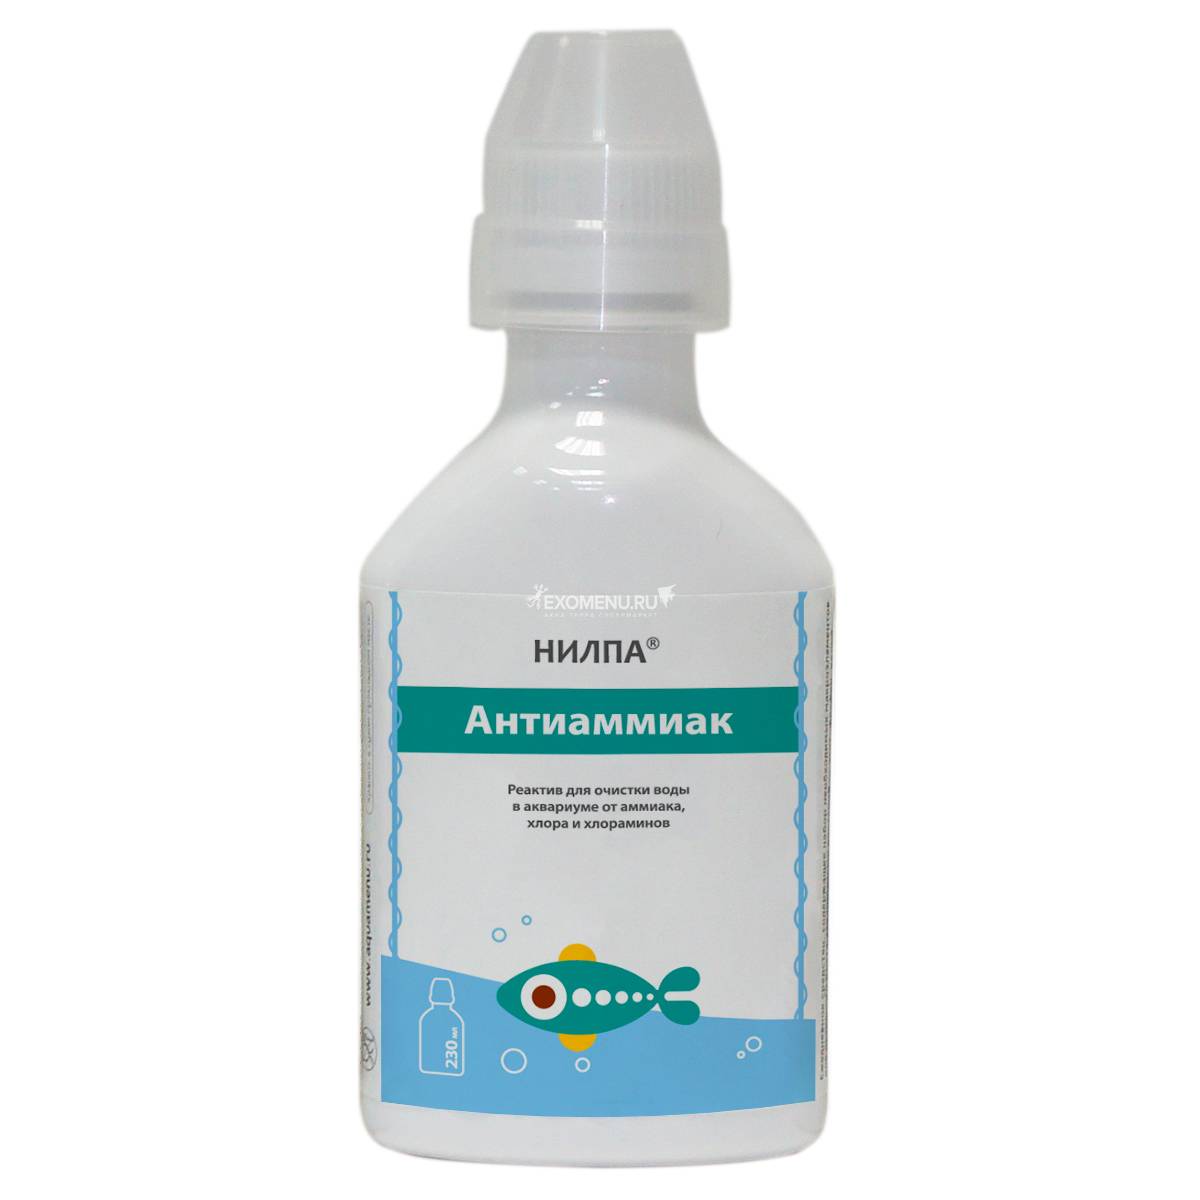 Реактив Антиаммиак НИЛПА, 230 мл - реактив для очищения воды от азотсодержащих соединений